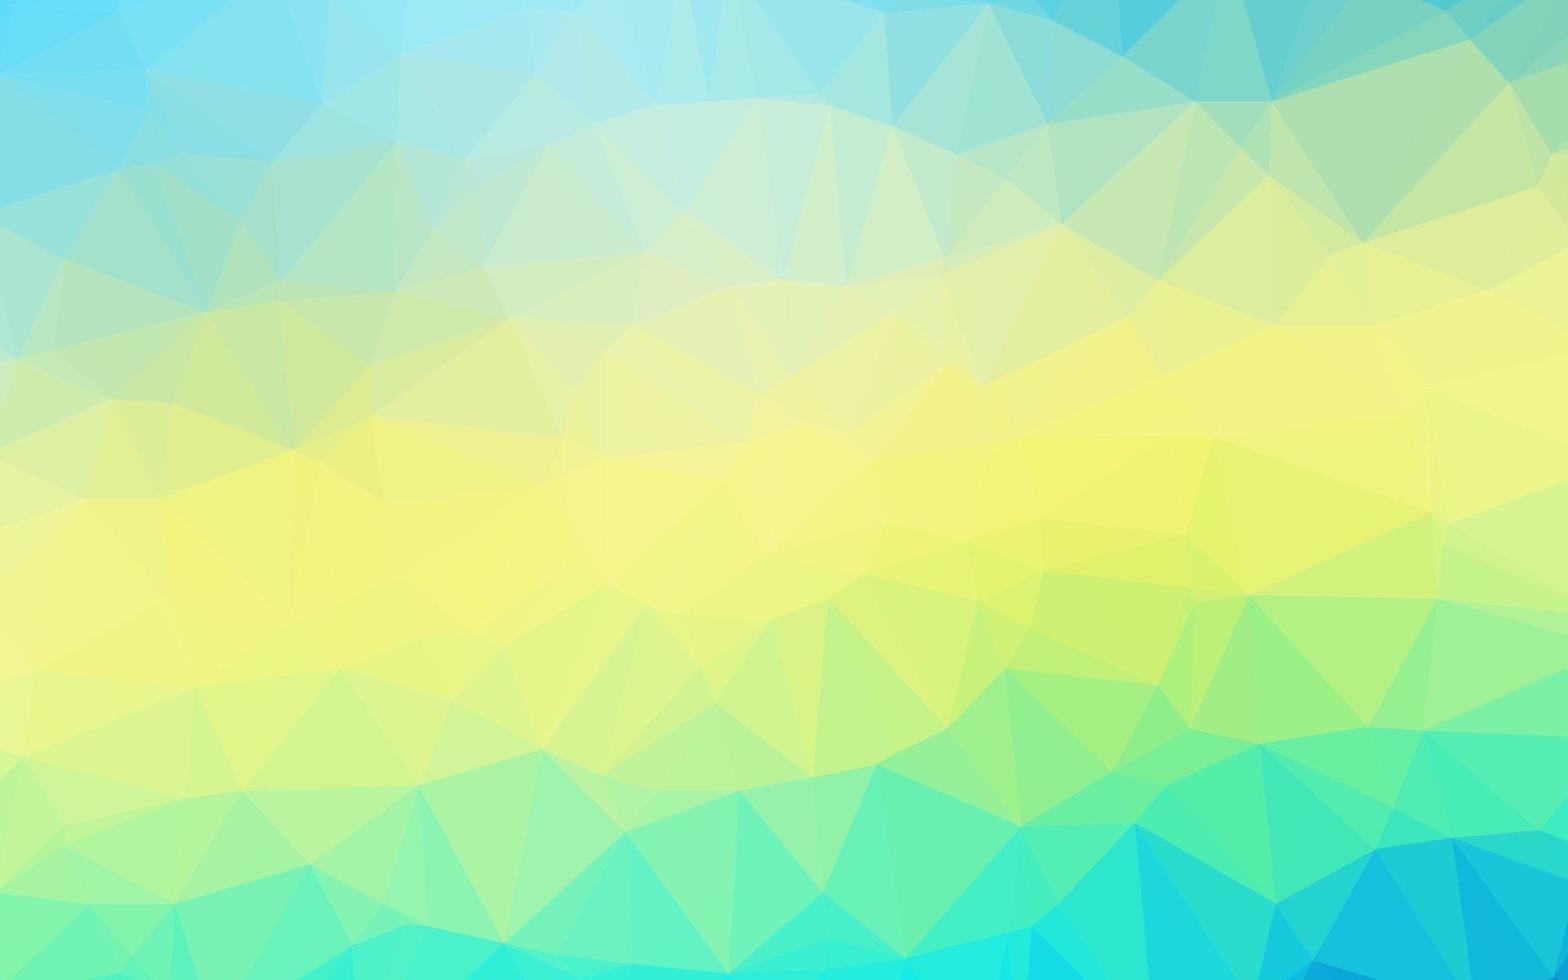 ljusblå, gul vektor polygonal bakgrund.